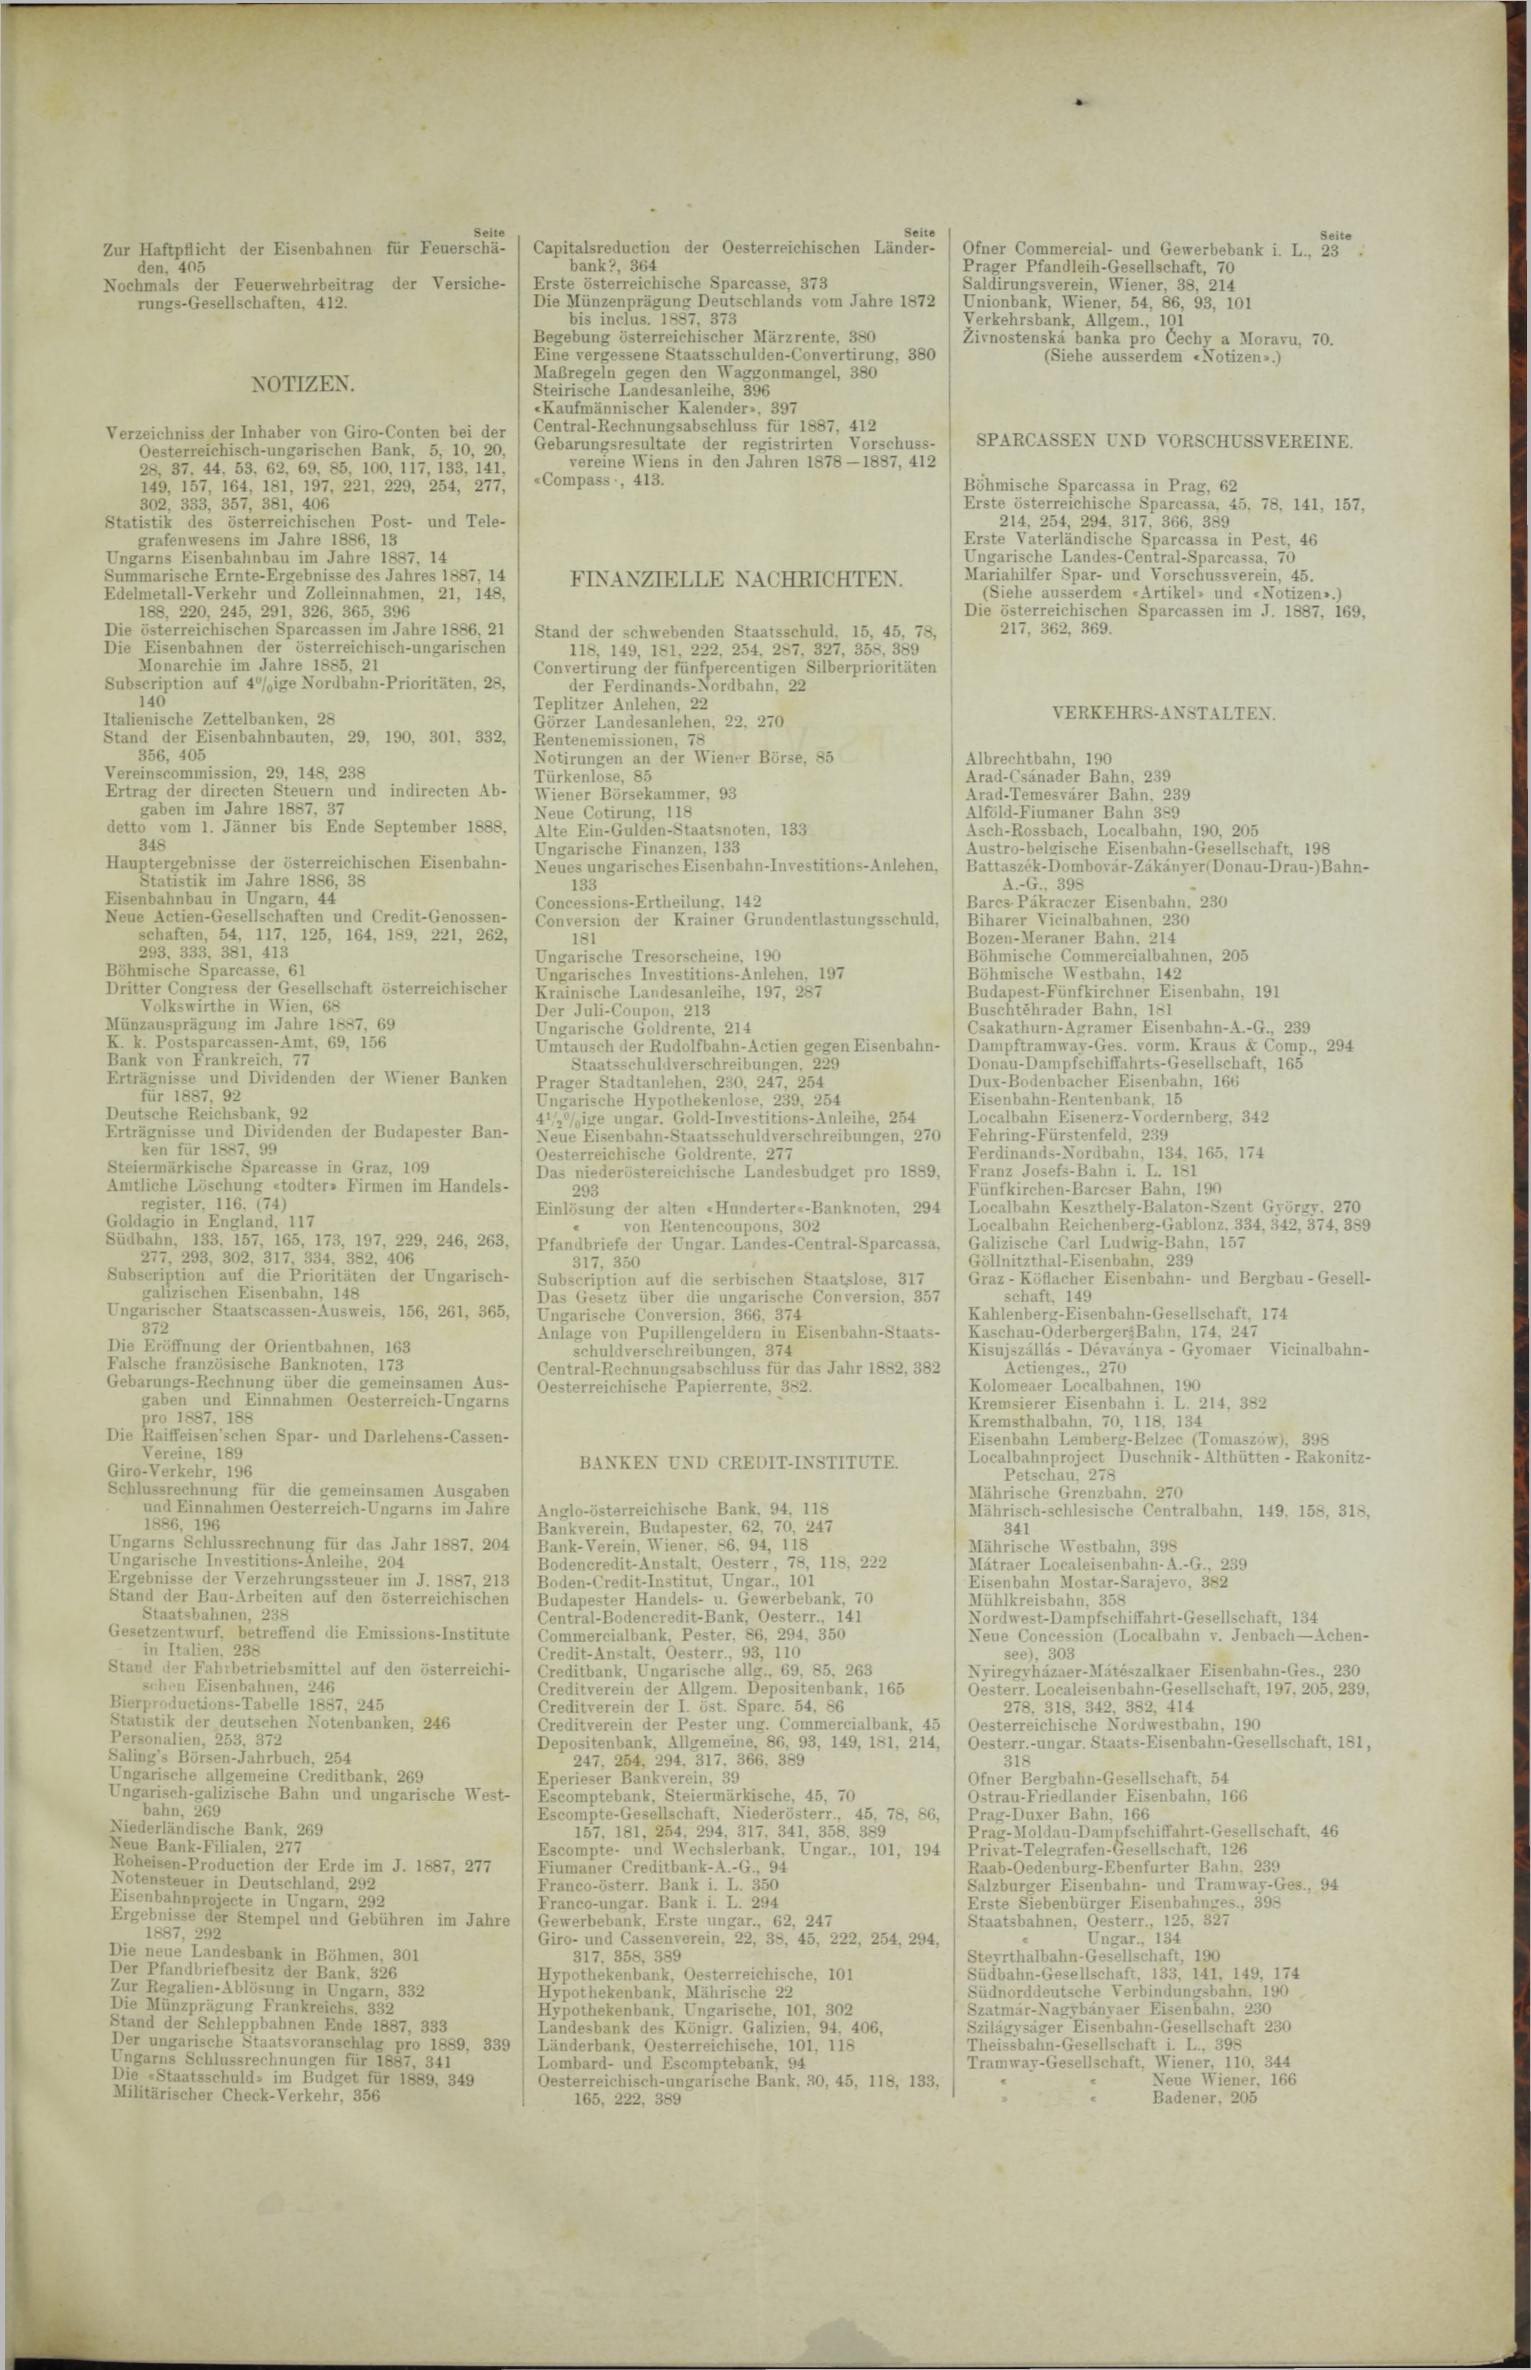 Der Tresor 26.04.1888 - Seite 11